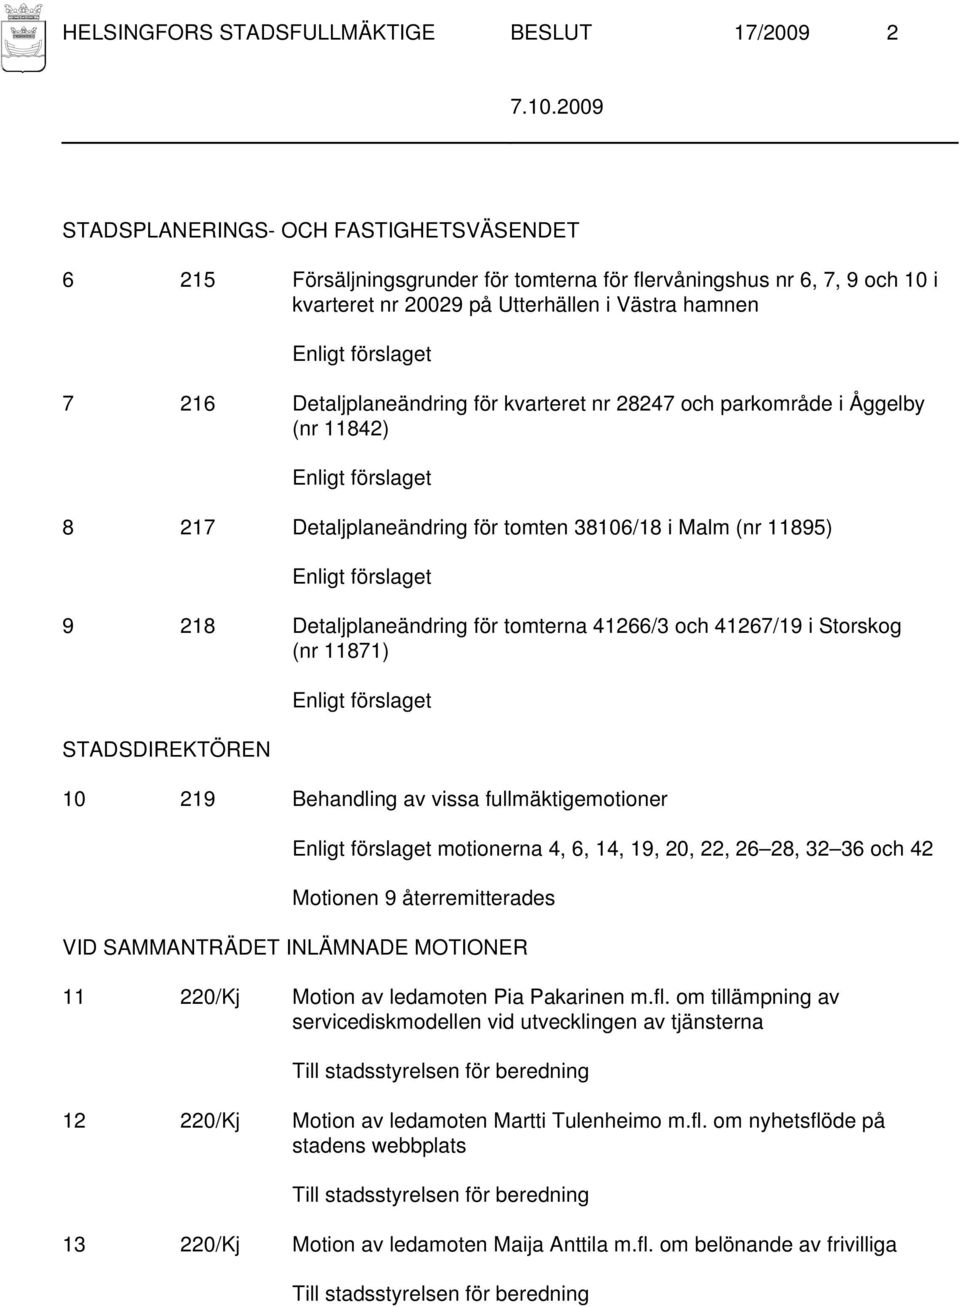 Enligt förslaget 9 218 Detaljplaneändring för tomterna 41266/3 och 41267/19 i Storskog (nr 11871) STADSDIREKTÖREN Enligt förslaget 10 219 Behandling av vissa fullmäktigemotioner Enligt förslaget